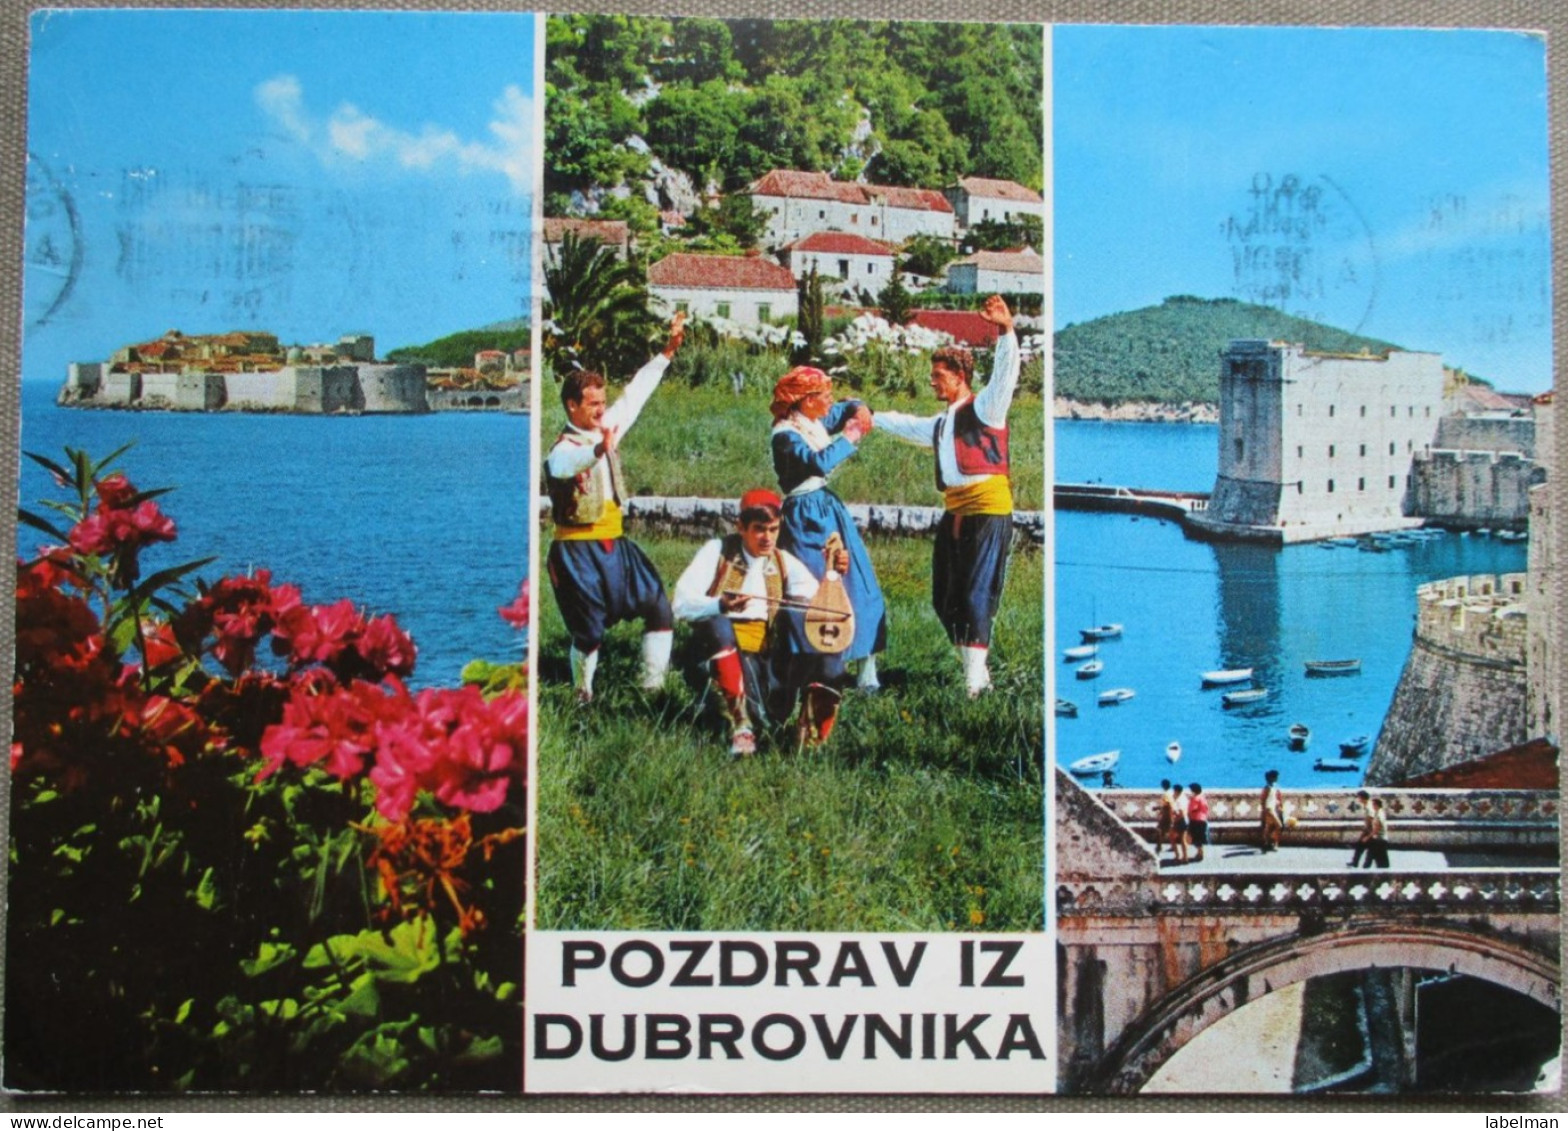 CROATIA DOVROBNIK JUGOSLAVIA POSTCARD CARTOLINA ANSICHTSKARTE CARTE POSTALE POSTKARTE CARD KARTE - Adesivi Di Alberghi